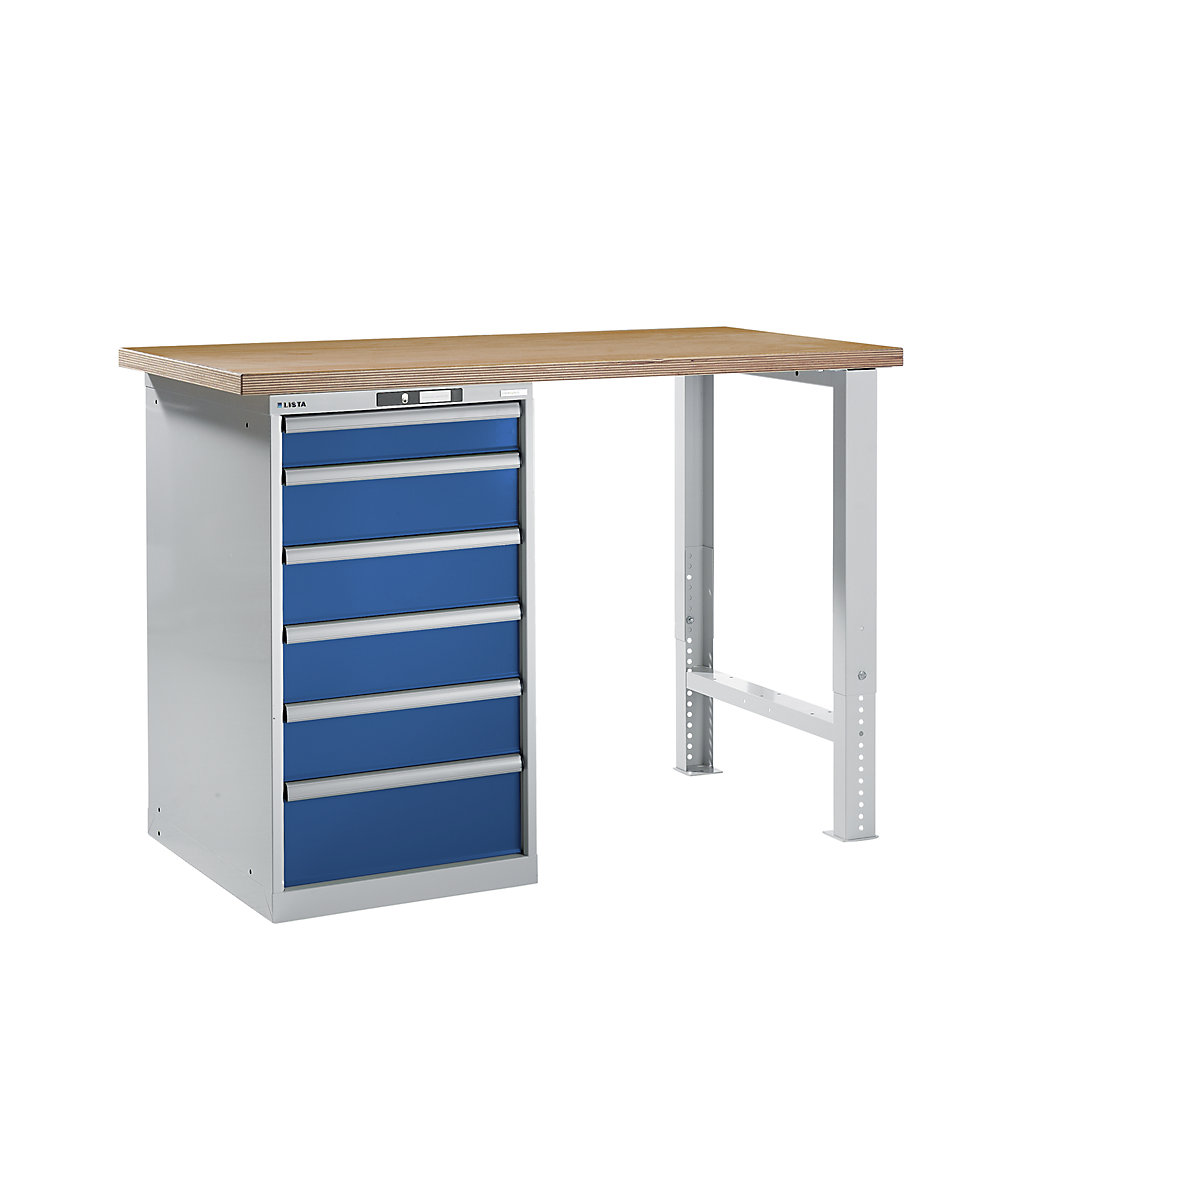 LISTA – Radna klupa kao modularni sustav, visina 1040 mm, ormar za postavljanje ispod stola, 6 ladice, u encijan plavoj boji, širina stola 1500 mm